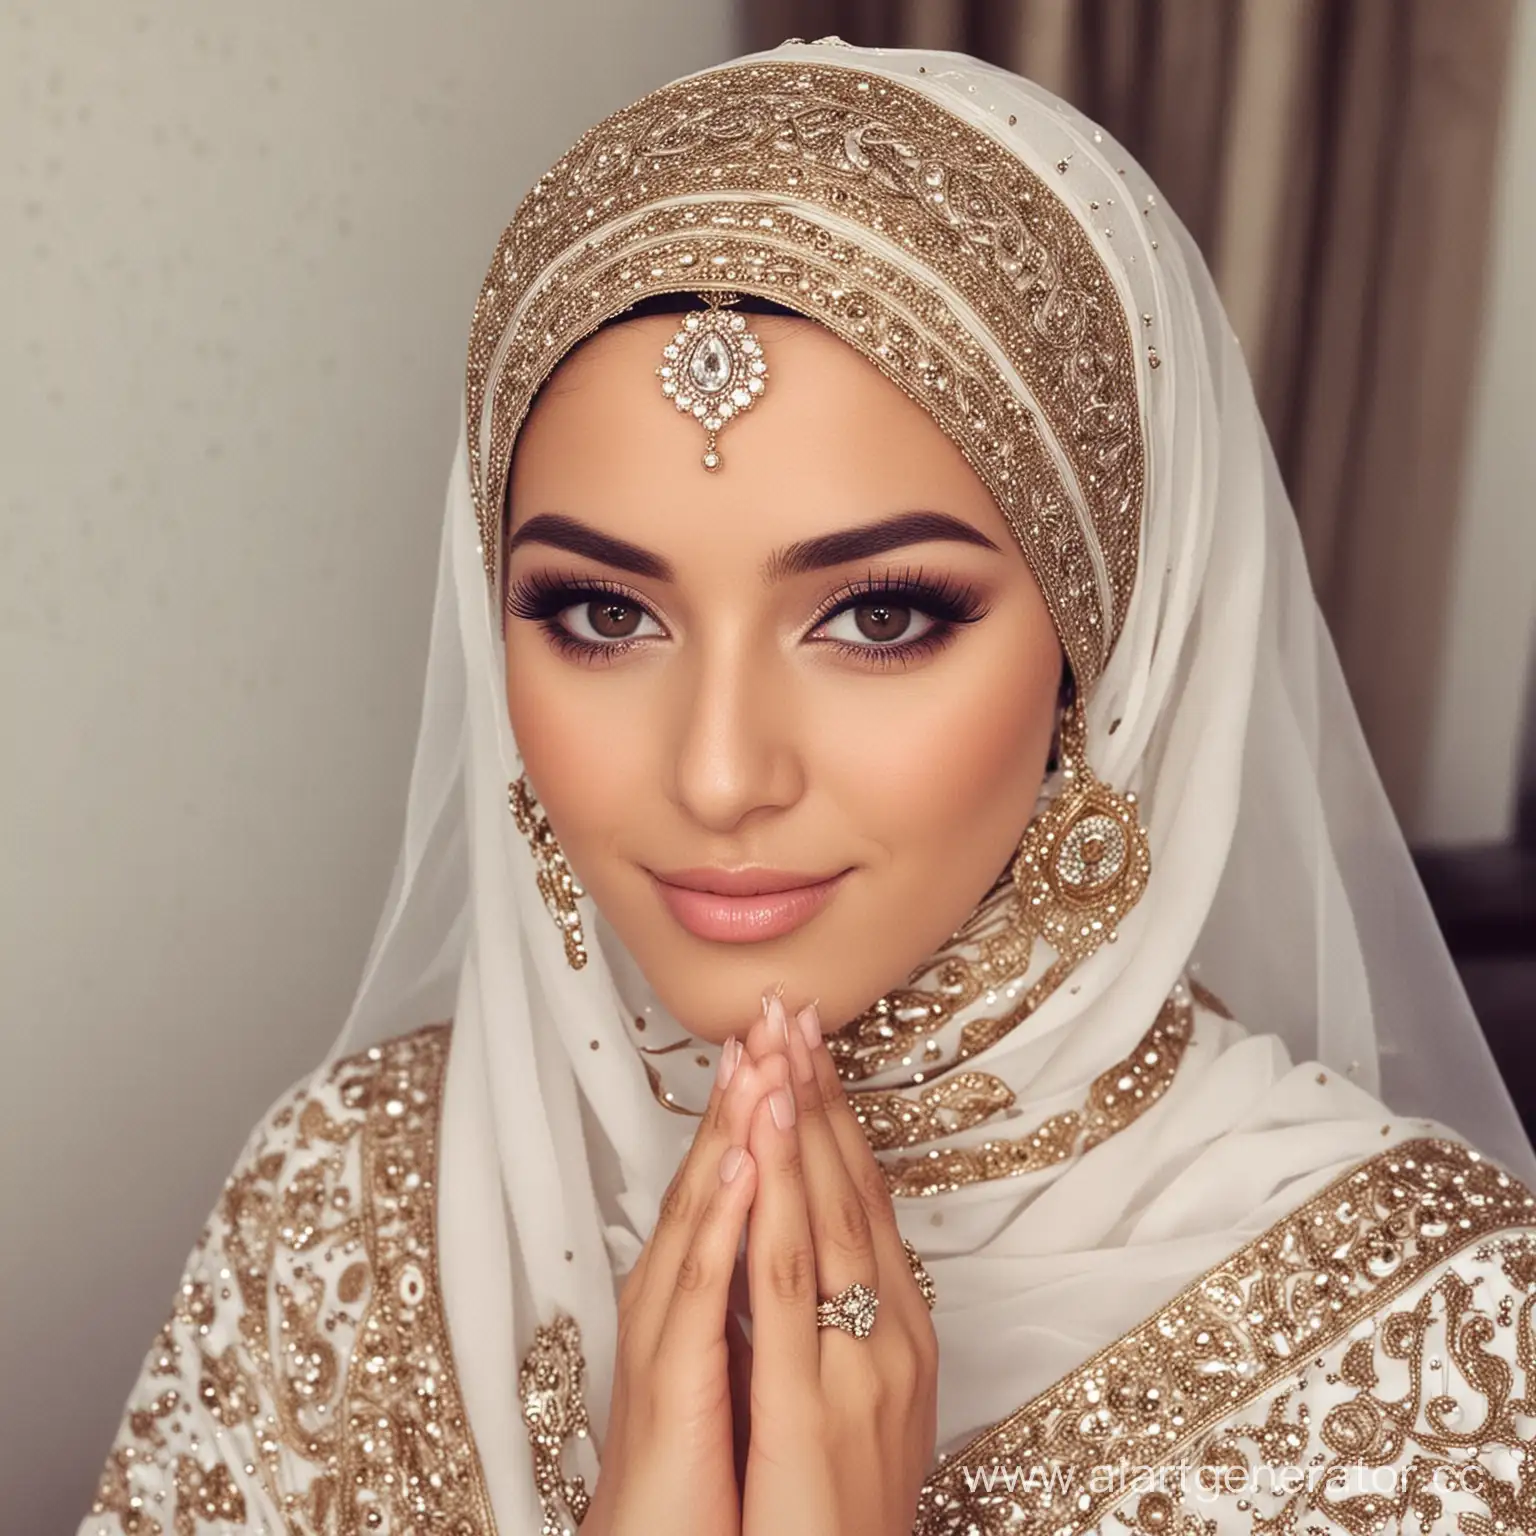 Elegant-Muslim-Bride-in-Contemporary-Wedding-Attire